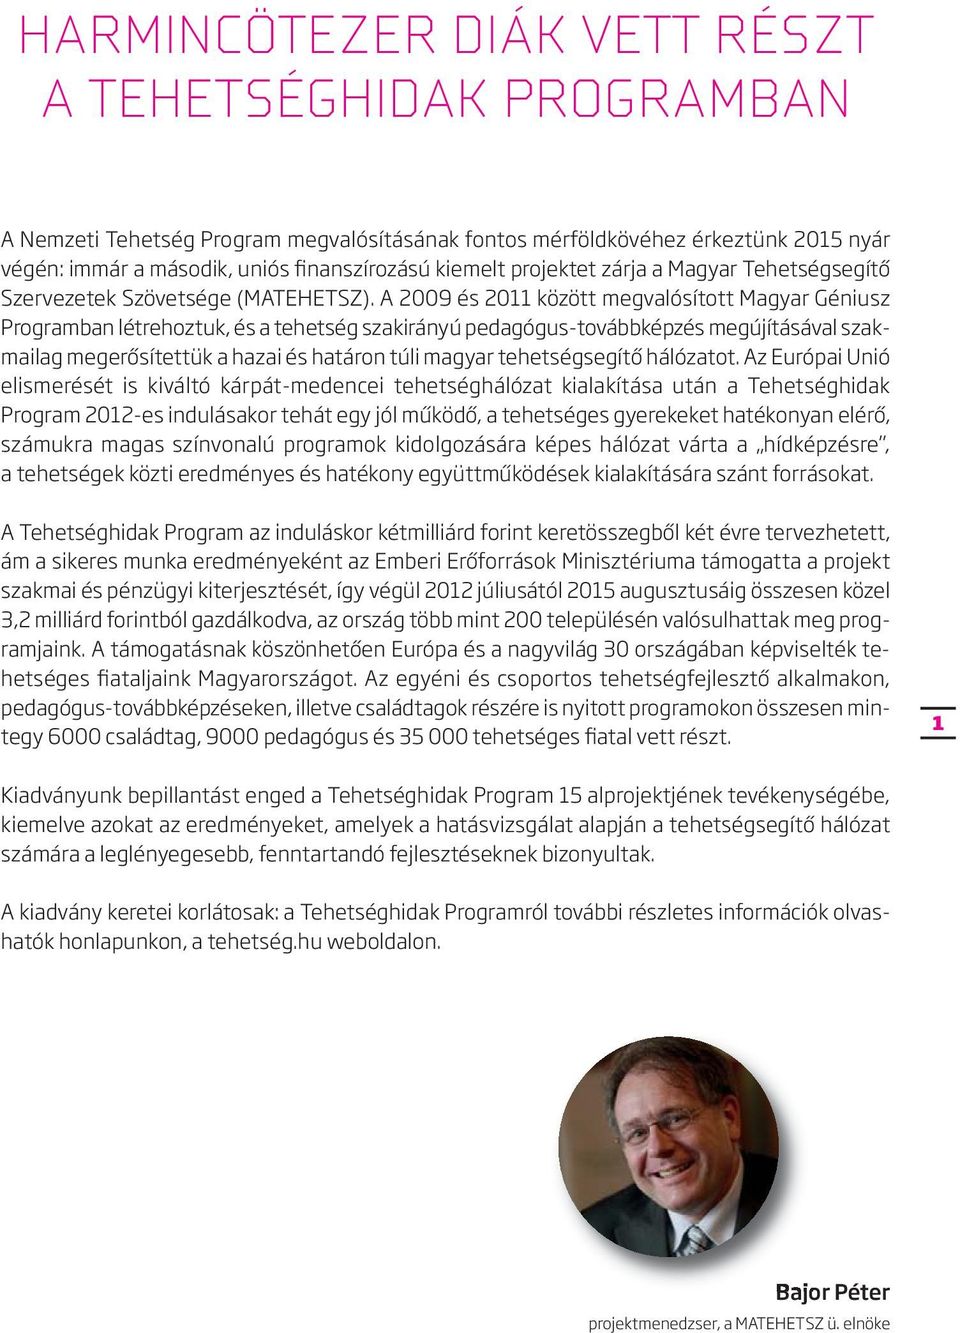 A 2009 és 2011 között megvalósított Magyar Géniusz Programban létrehoztuk, és a tehetség szakirányú pedagógus-továbbképzés megújításával szakmailag megerősítettük a hazai és határon túli magyar